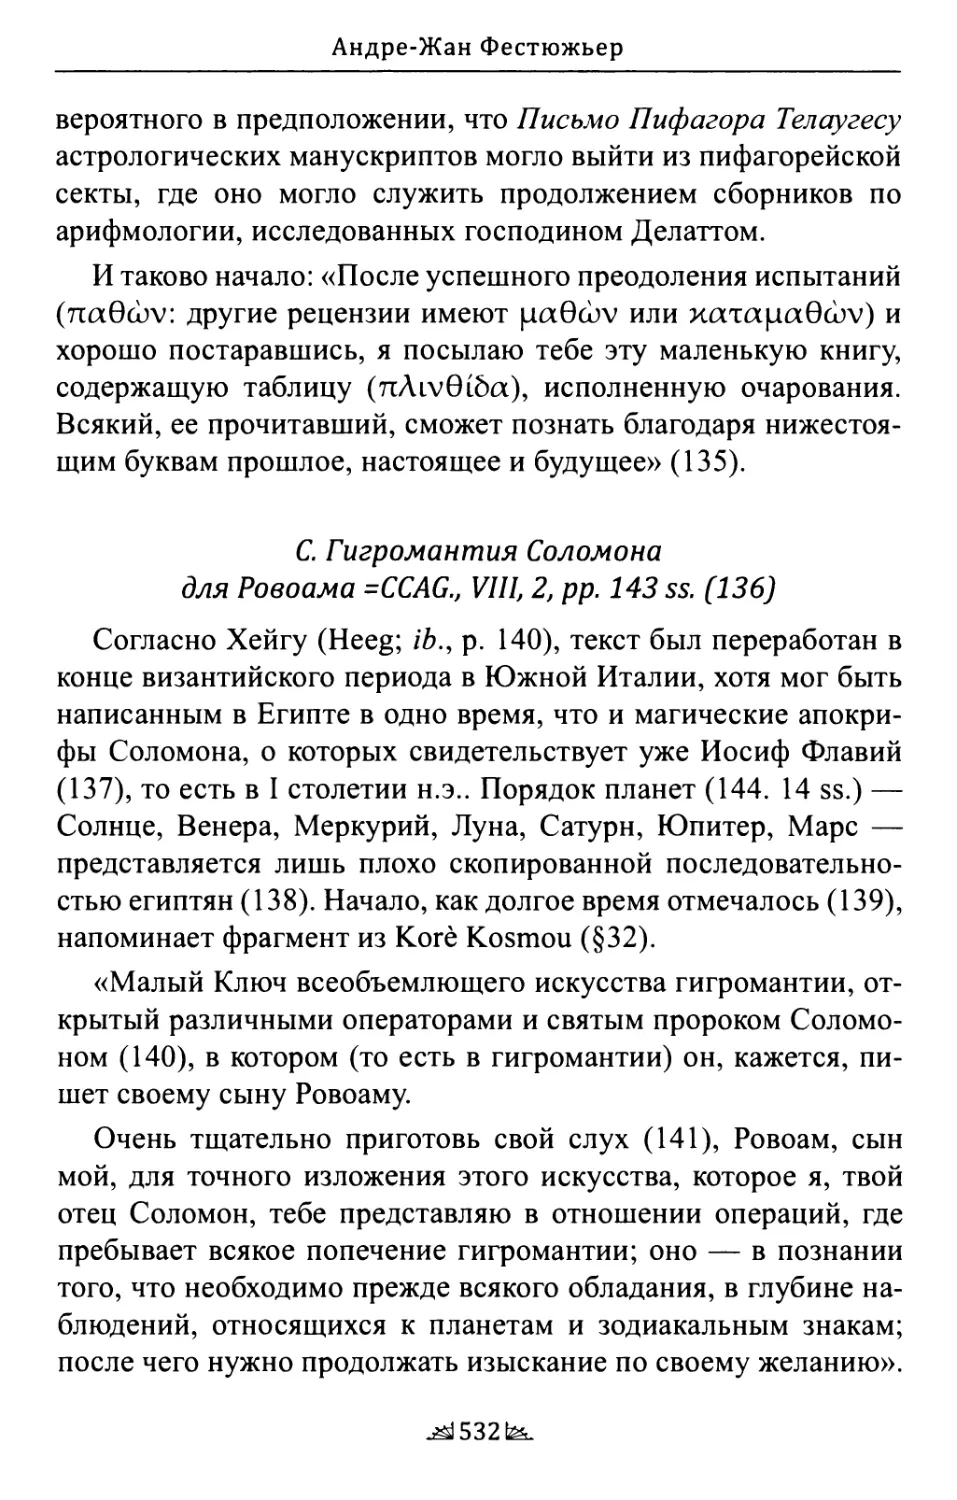 C. Гигромантия Соломона для Ровоама =CCAG., VIII, 2, pp. 143 ss.